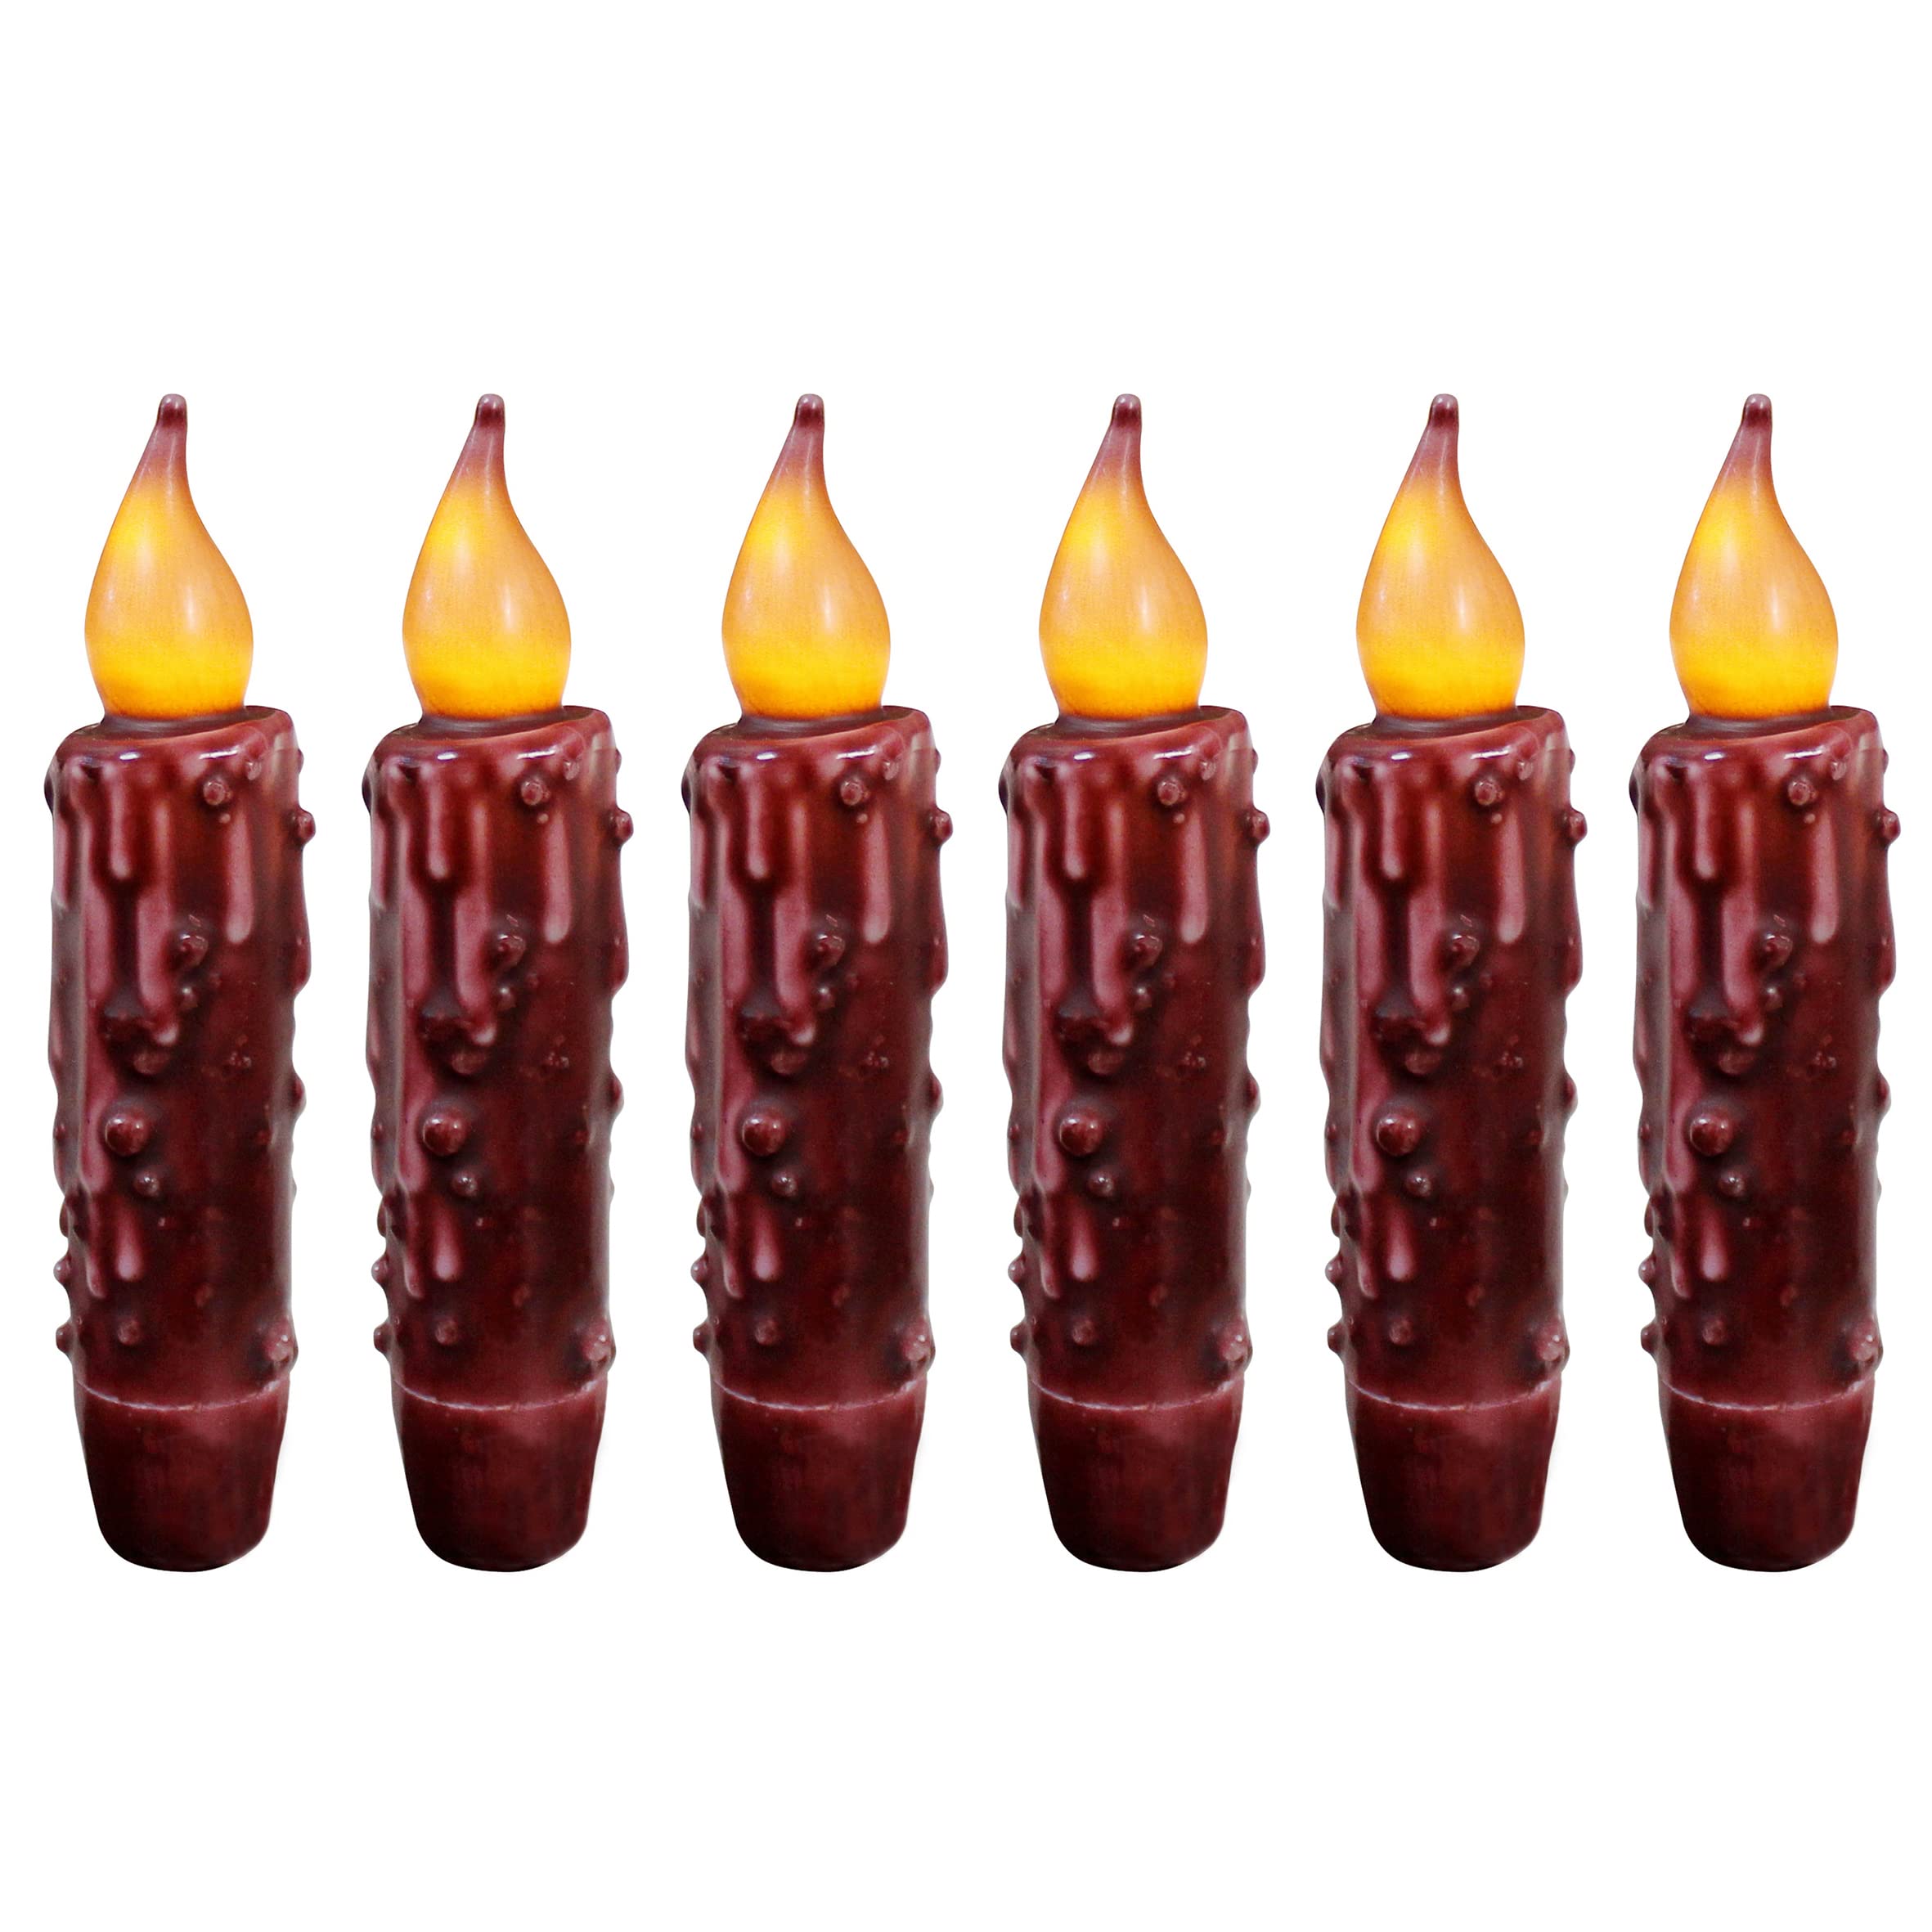 CVHOMEDECO. Echtwachs Hand getauchte batteriebetriebene LED-Timer-Kerzen-Kerzen Rustikale Primitive flammenlose Lichter-Dekor, 12 cm, Burgund, 6 Stück in einer Packung